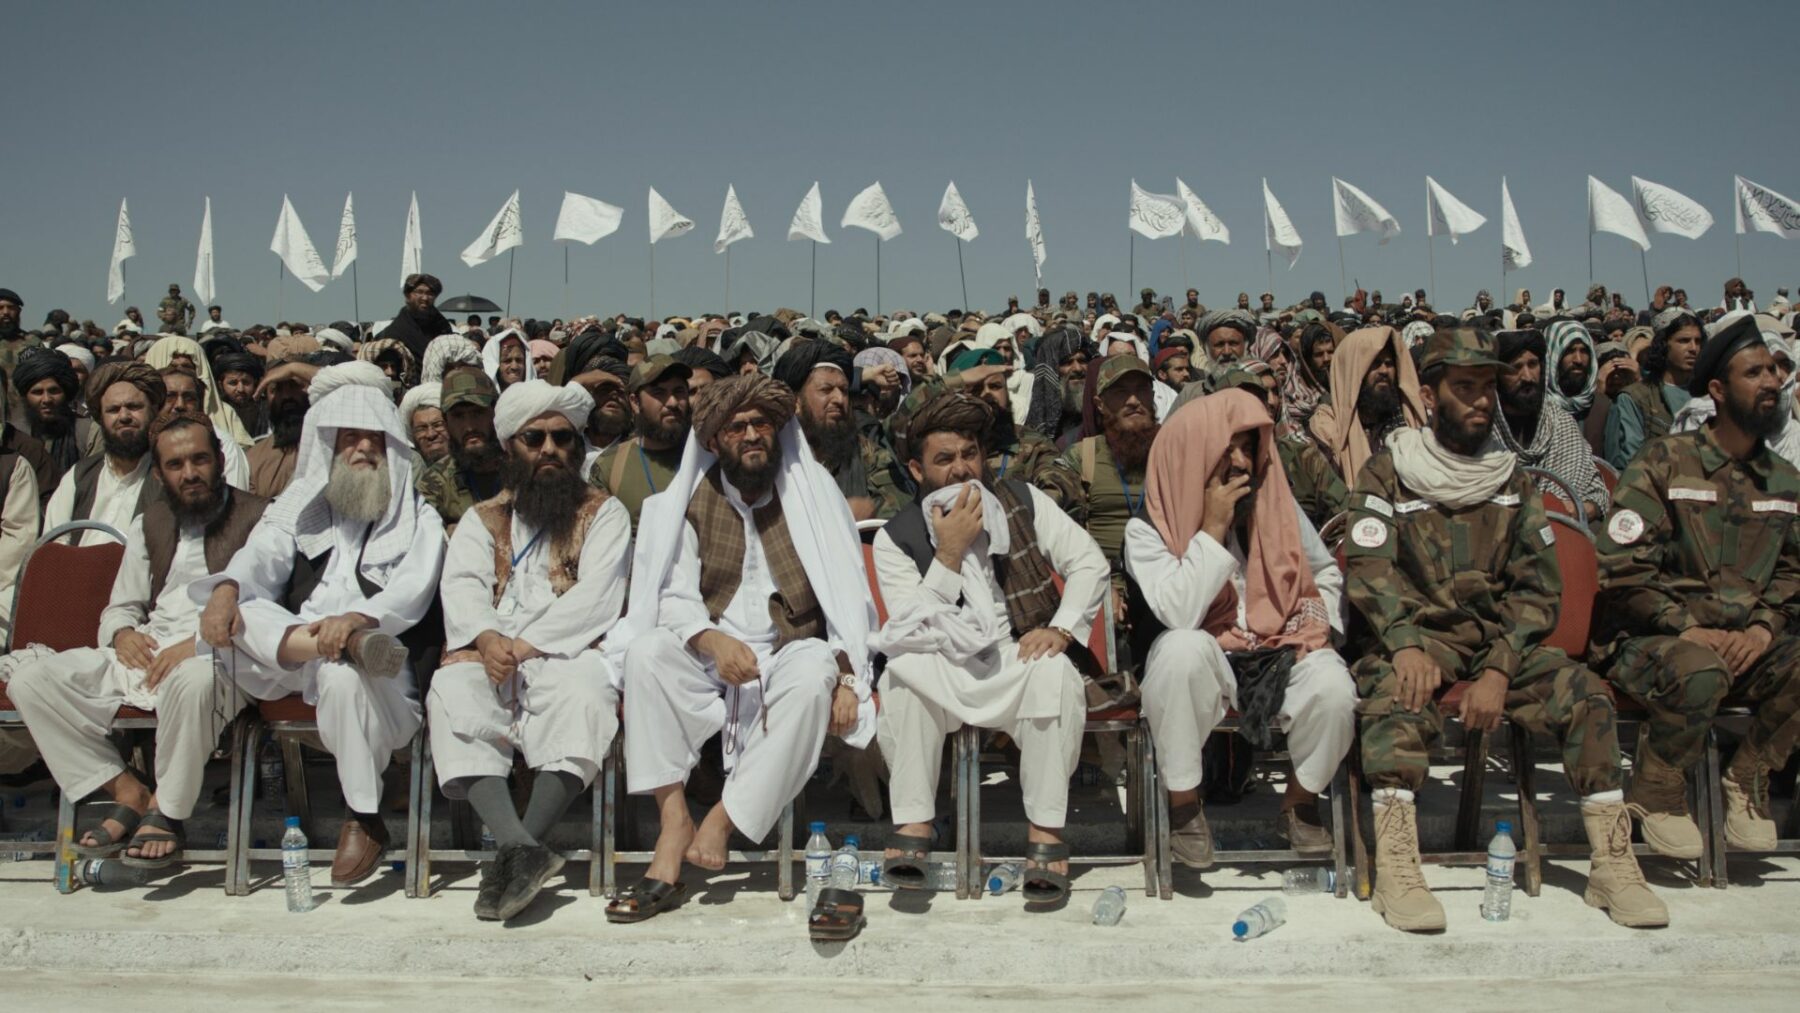 Duża grupa mężczyzn siedzących na krzesłach w kilku rzędach, a nad nimi powiewają białe flagi